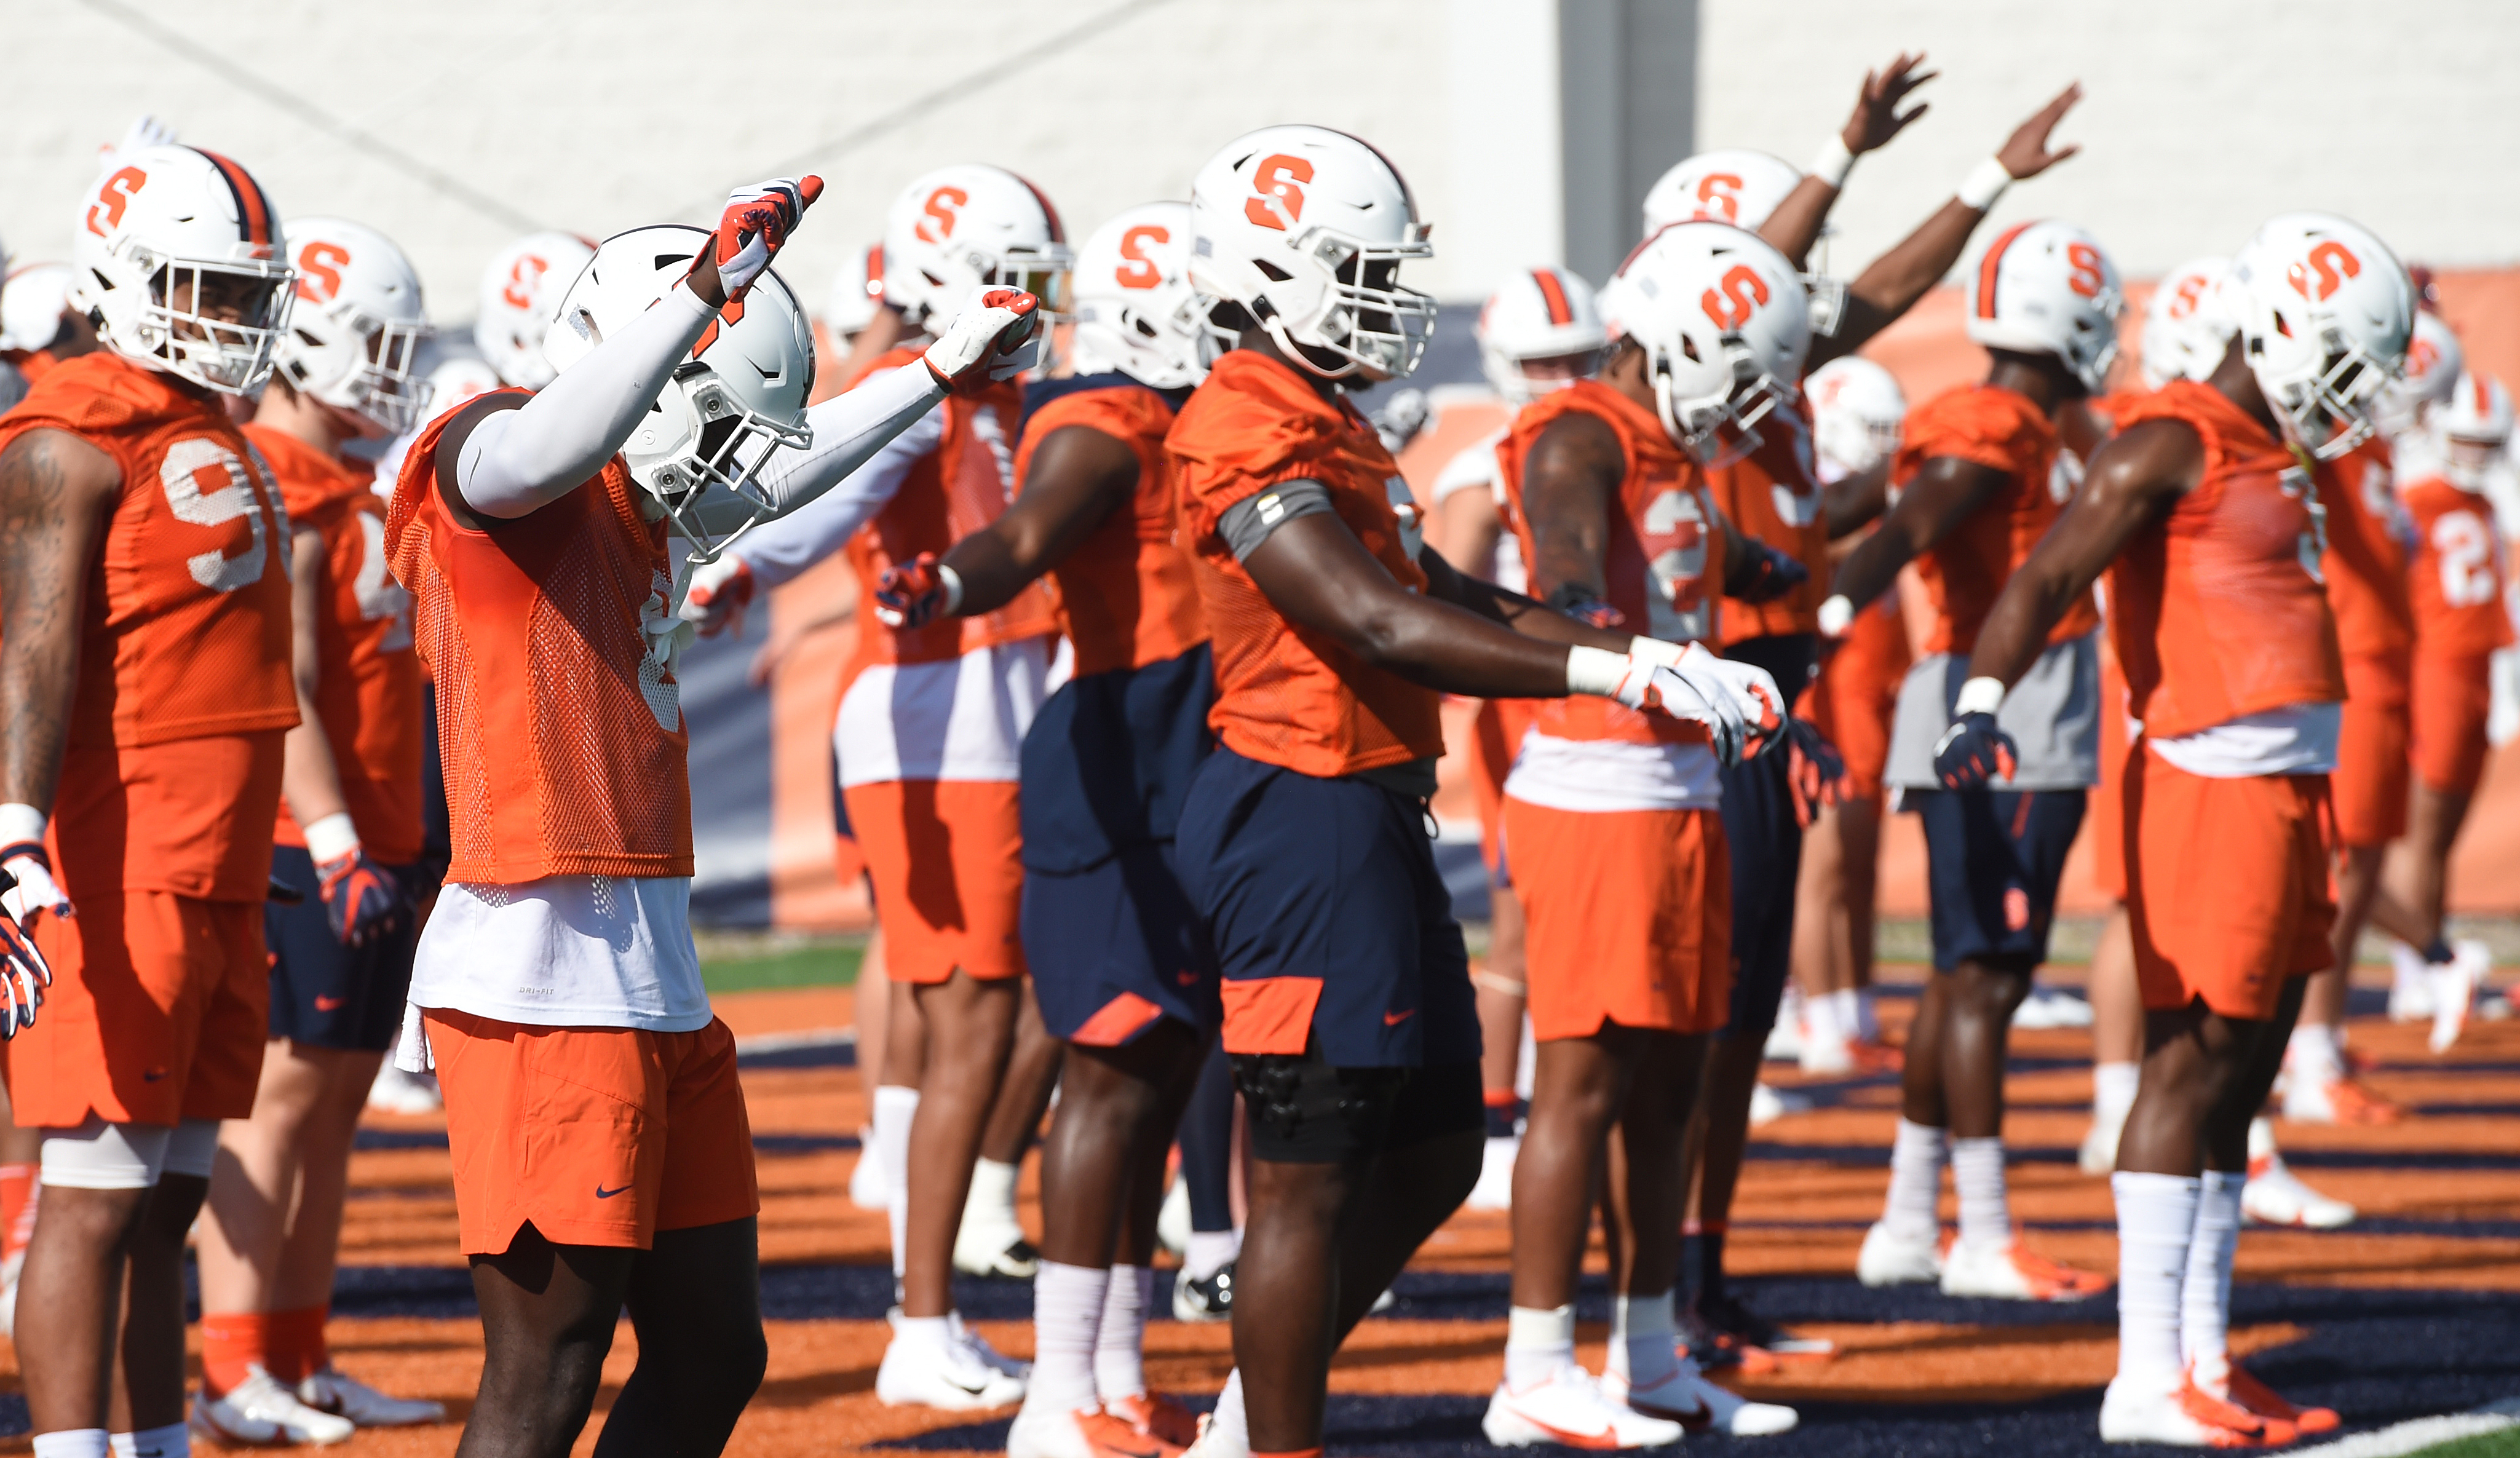 Josh Black, Syracuse Orange football team shift focus to season opener